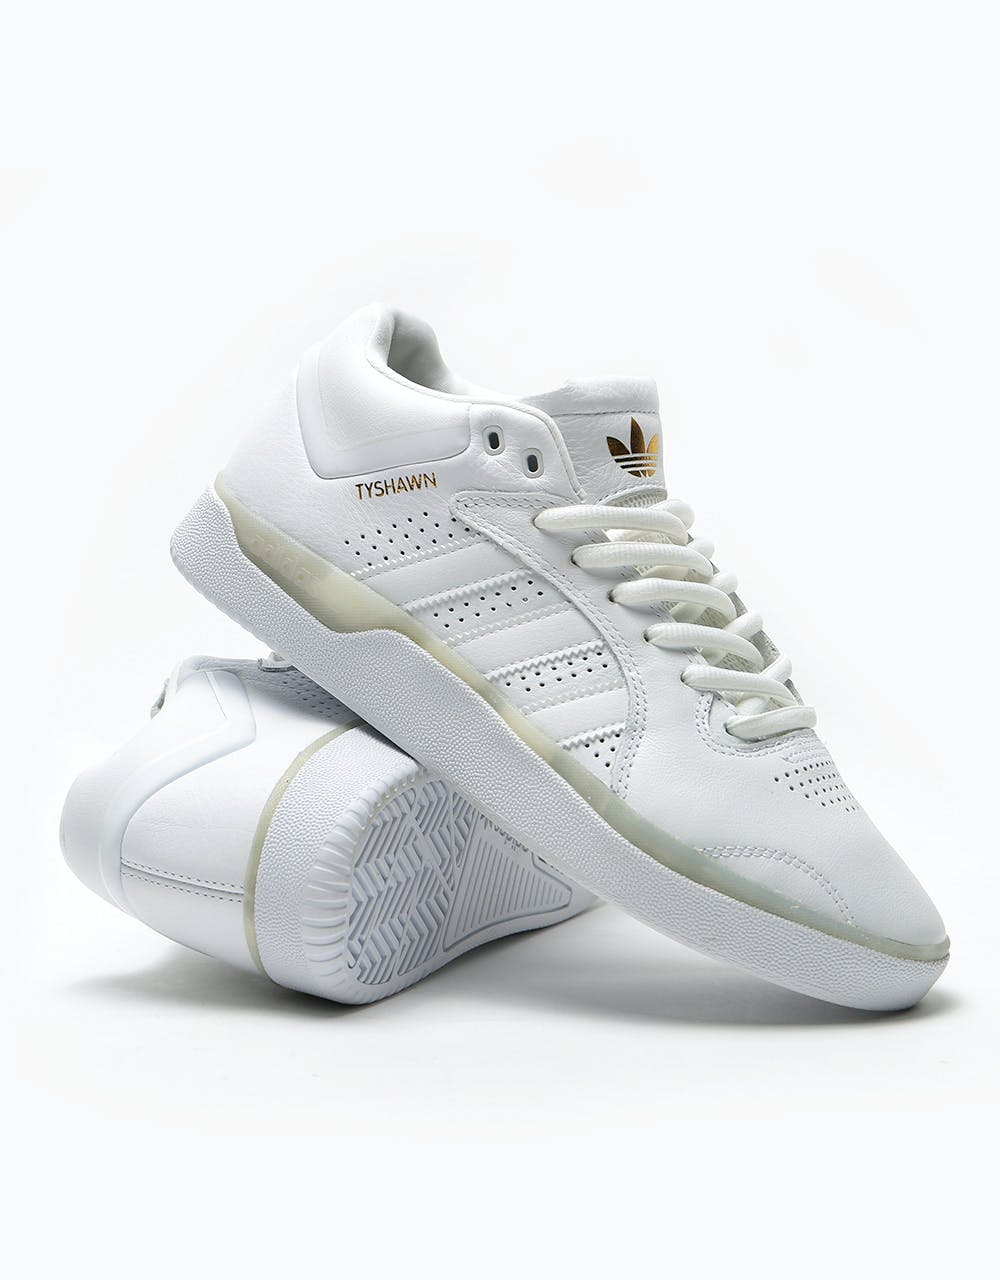 Adidas Tyshawn Skate Shoes - White/White/White